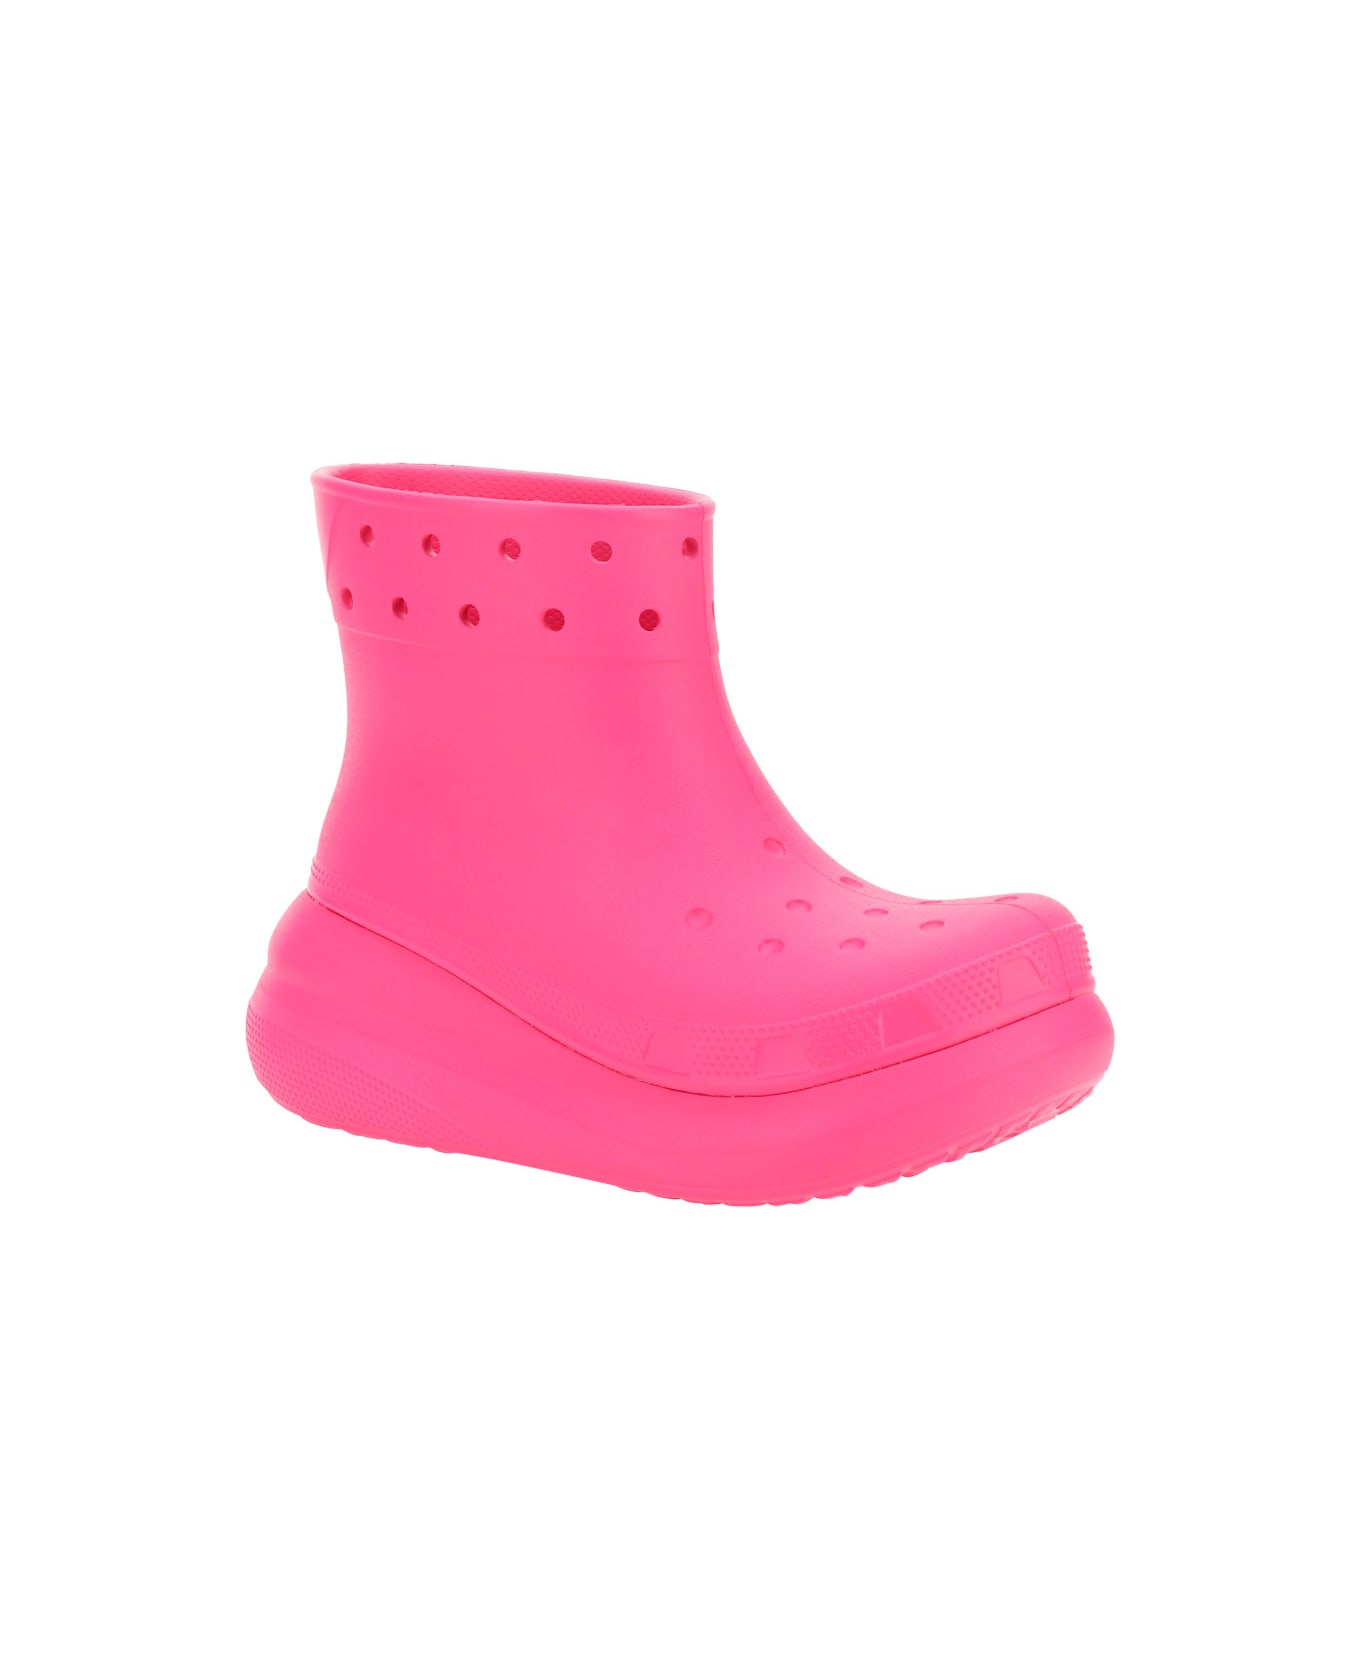 Crocs Crush Rain Boots - PINK